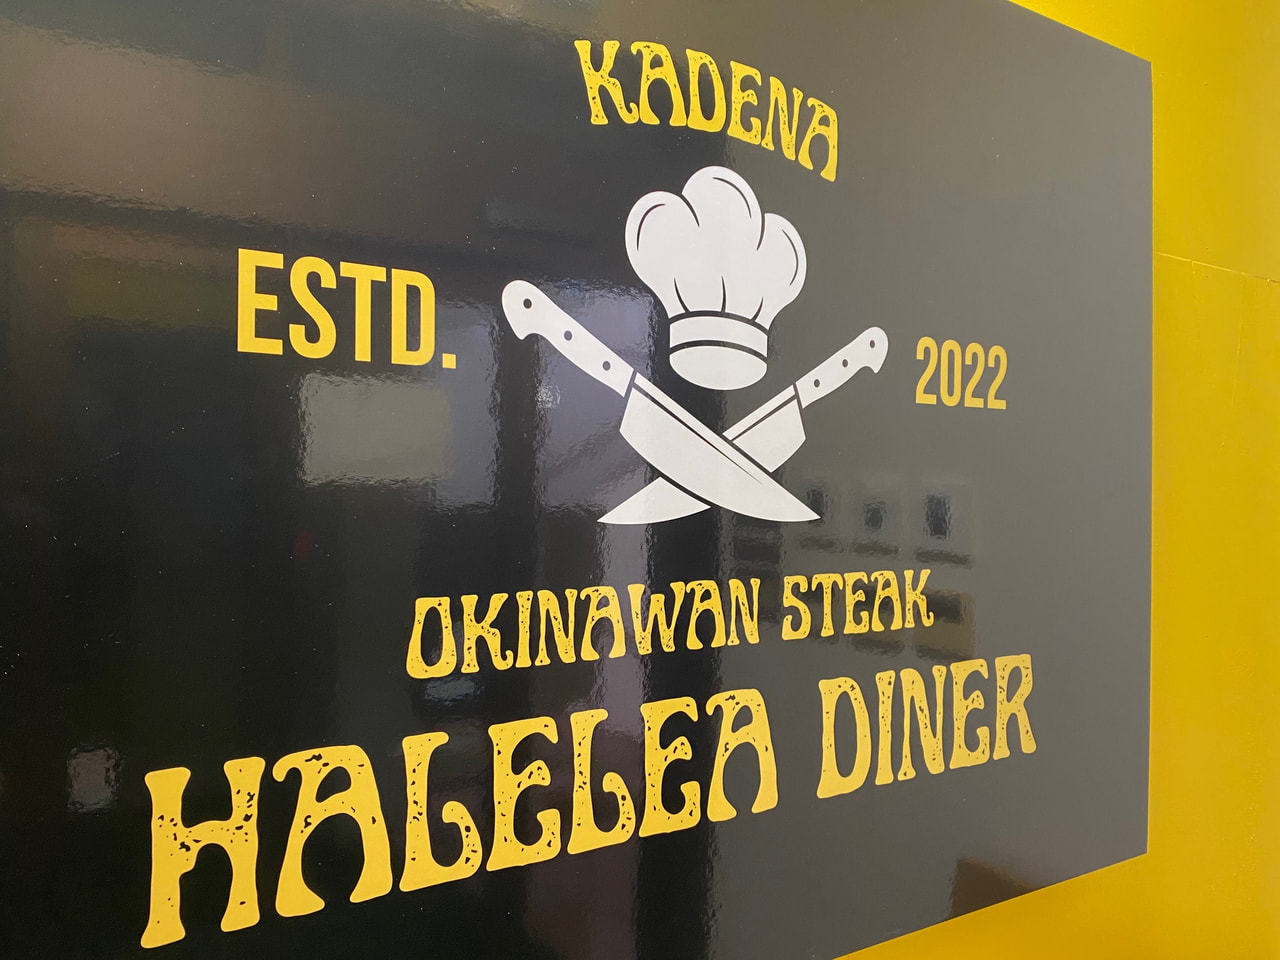 ２階レストラン「オキナワン ステーキ　ハレレア ダイナー」新規オープンのお知らせ